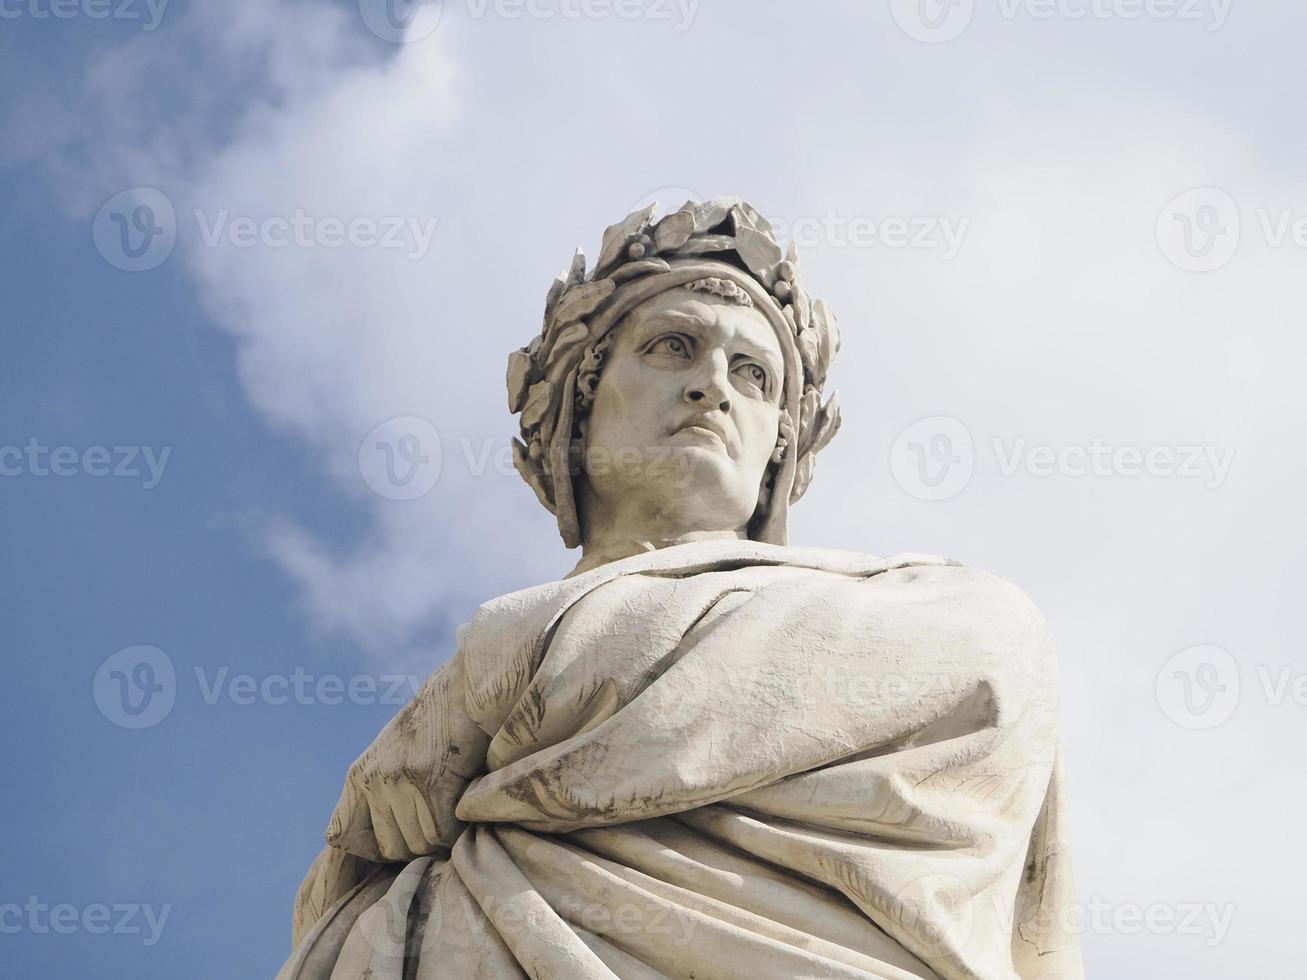 dante staty i florens santa croce plats foto